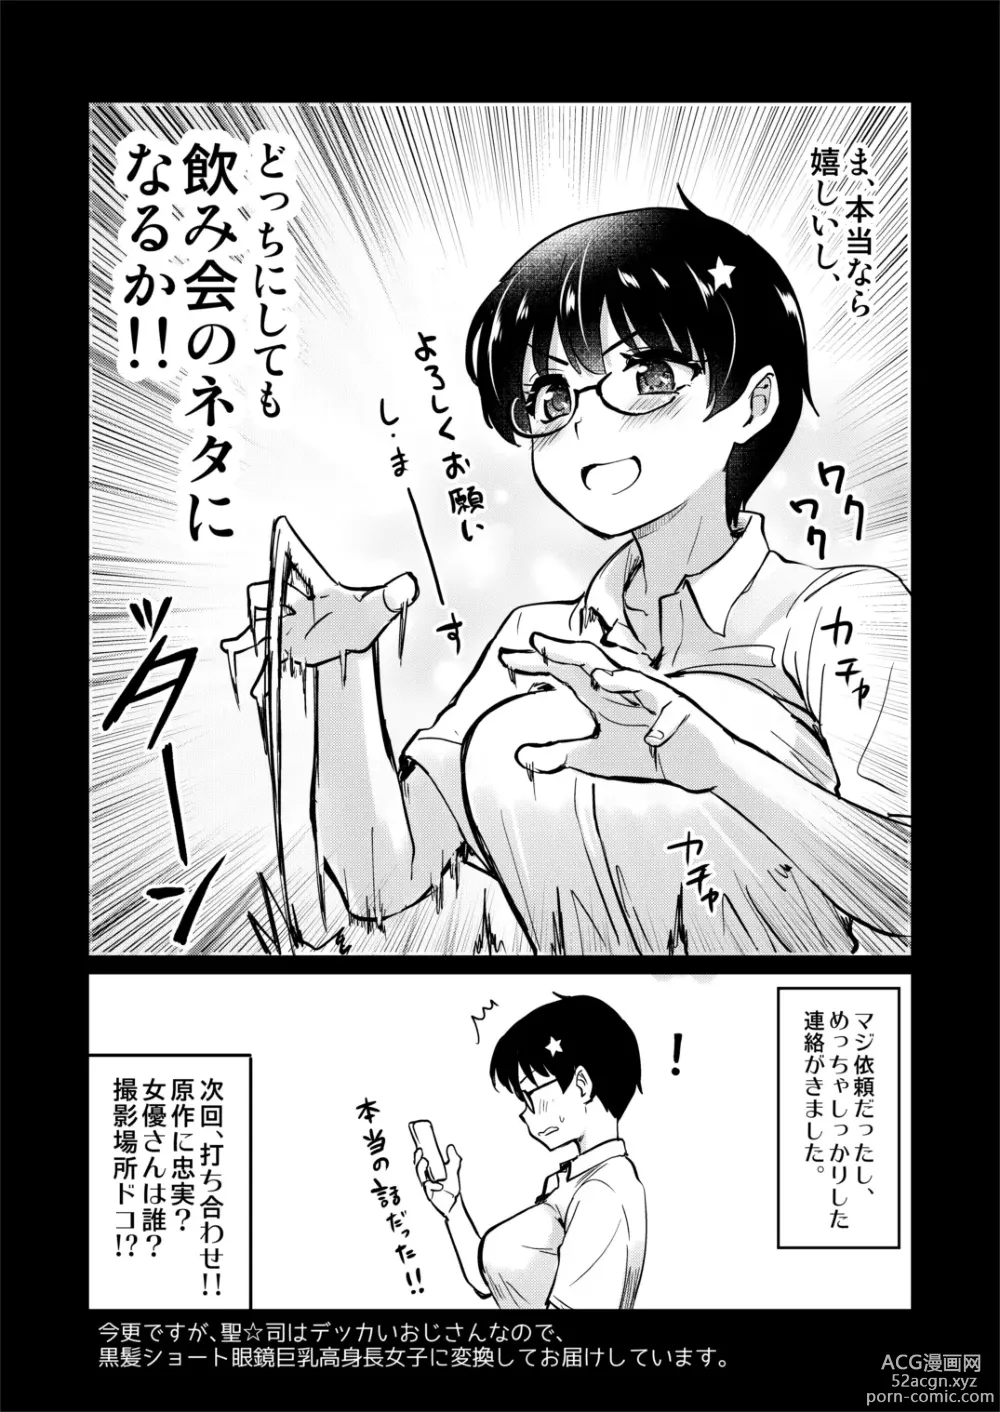 Page 7 of doujinshi Jibun no Kaita Manga ga Jissha AV ni!? Sekkaku nano de Satsuei Genba no Kengaku ni Ittekimashita.